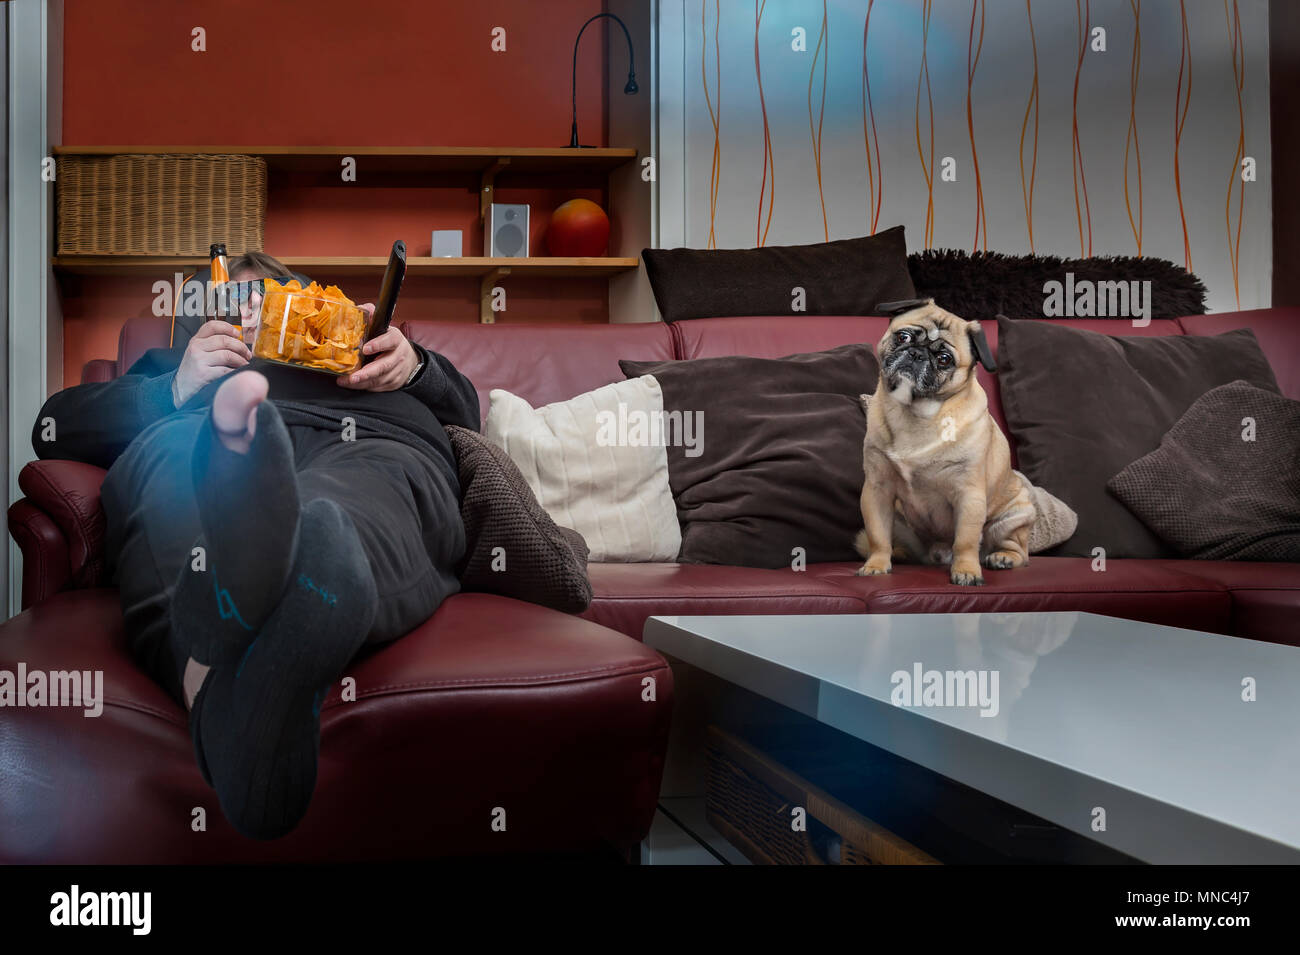 Un homme mange des chips devant la télé. Son chien est assis à côté de lui sur le canapé. L'homme a un trou dans le bas et un 3 D sans lunettes mis sur. P Grenouille Banque D'Images